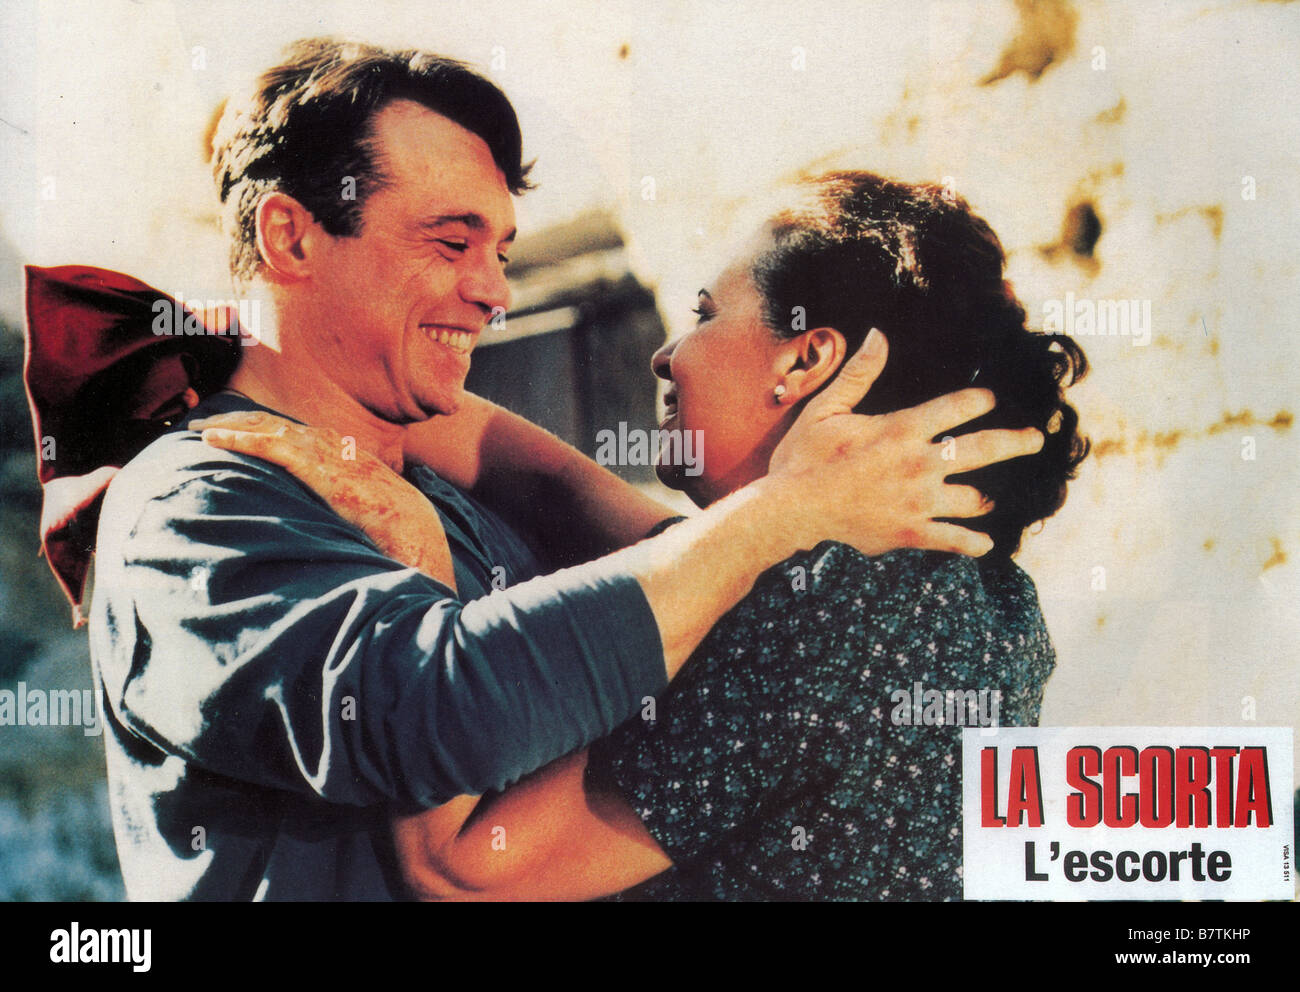 L'escorte Scorta, La  Year: 1993 - Italy   Director: Ricky Tognazzi Stock Photo